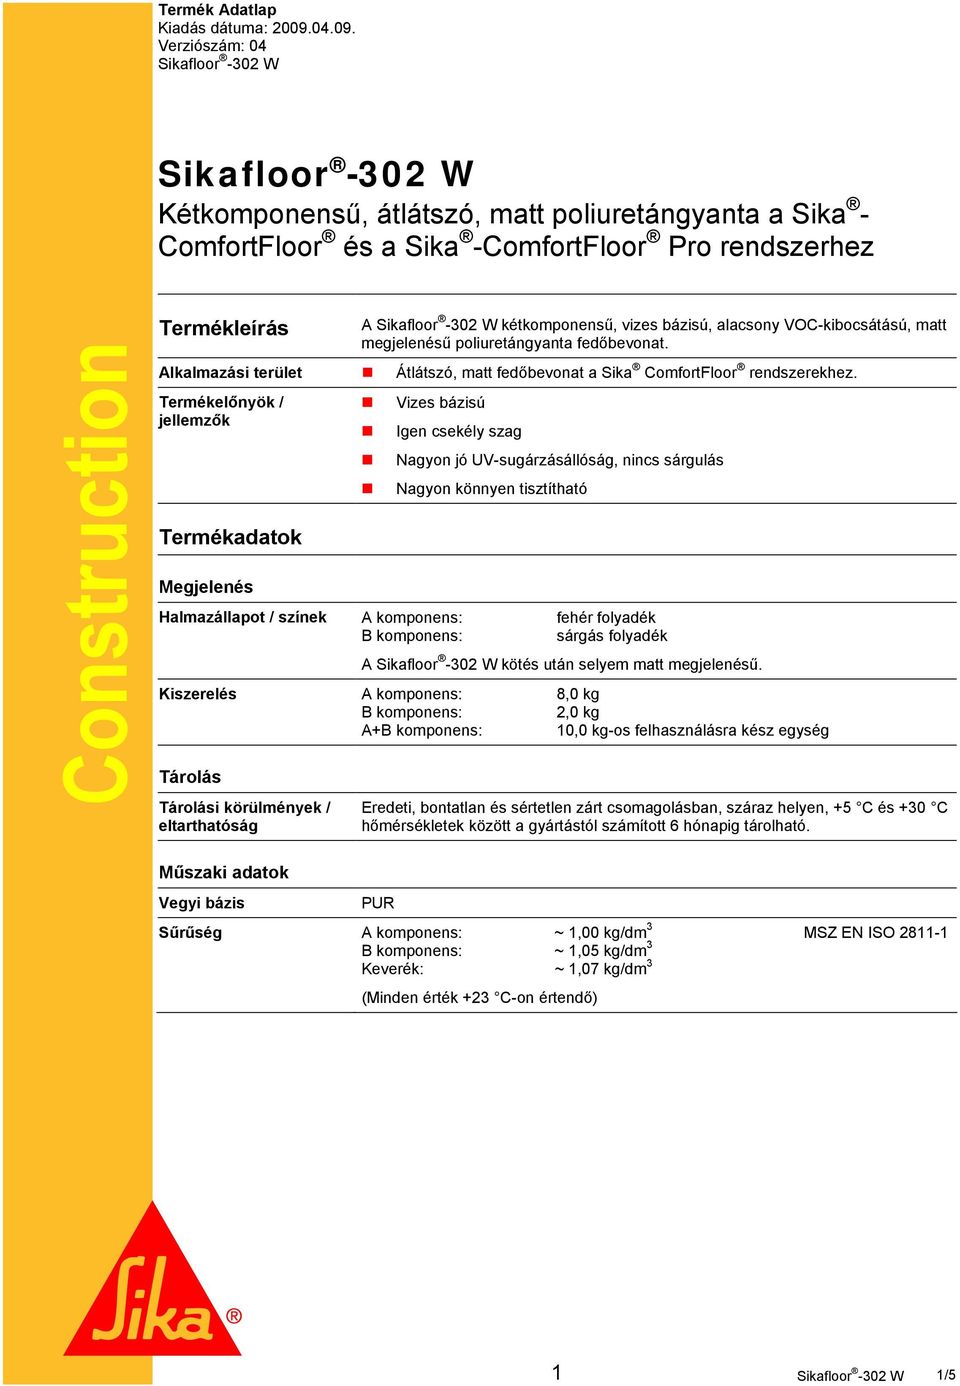 Verziószám: 04 Sikafloor -302 W Sikafloor -302 W Kétkomponensű, átlátszó, matt poliuretángyanta a Sika - ComfortFloor és a Sika -ComfortFloor Pro rendszerhez Construction Termékleírás A Sikafloor